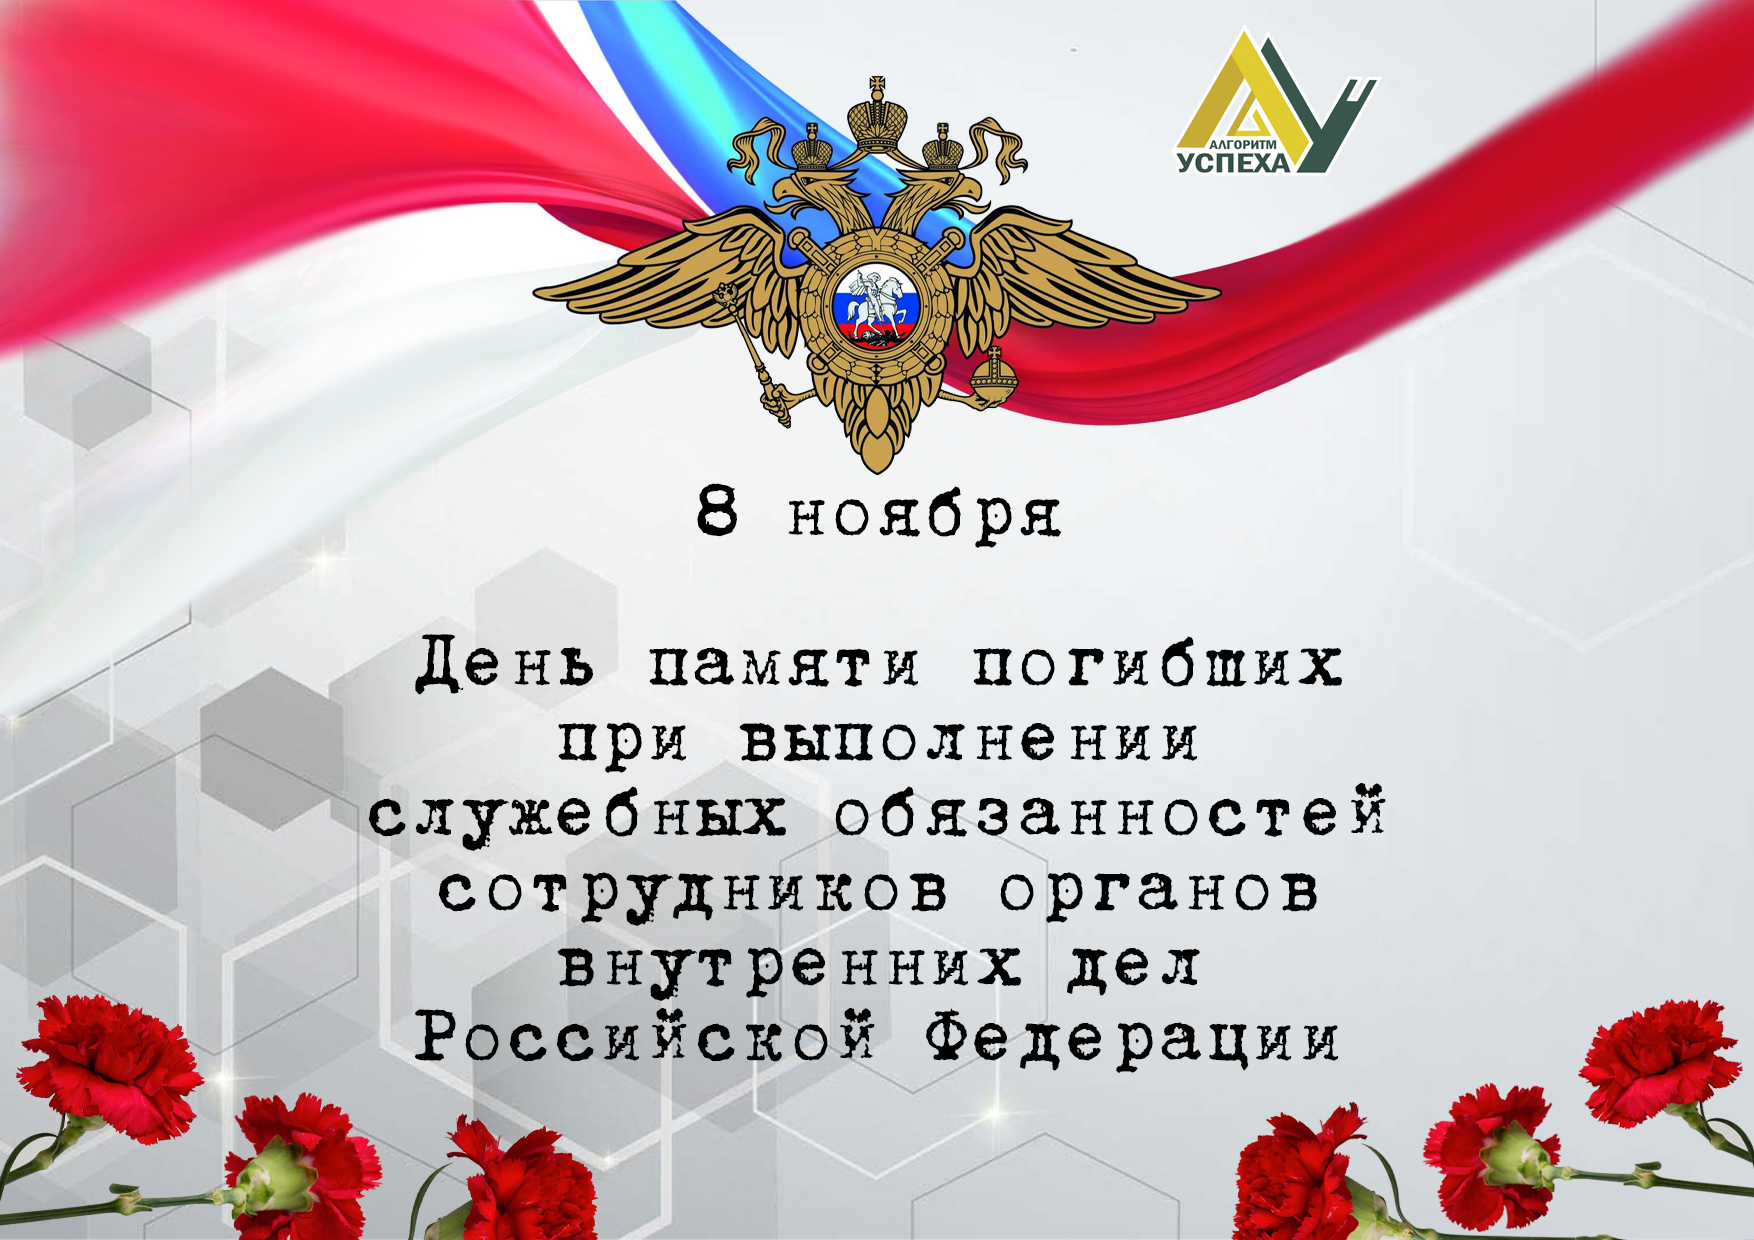 8 ноября отмечается День памяти погибших при выполнении служебных обязанностей сотрудников органов внутренних дел Российской Федерации.